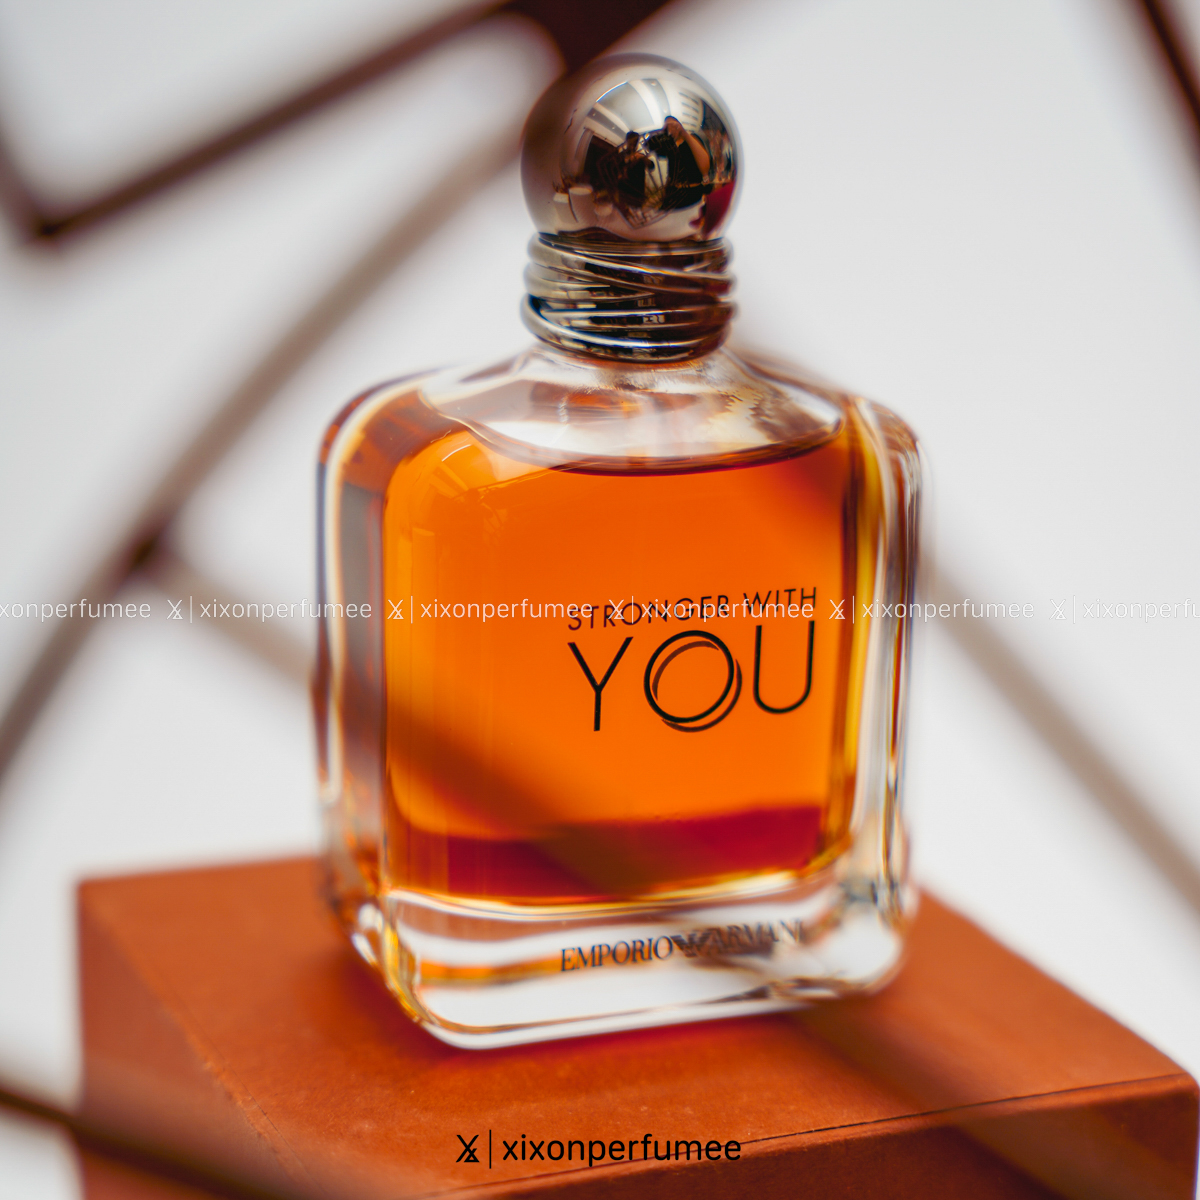 Nước hoa nam Giorgio Armani Emporio Armani Stronger With You | Xixon Perfume